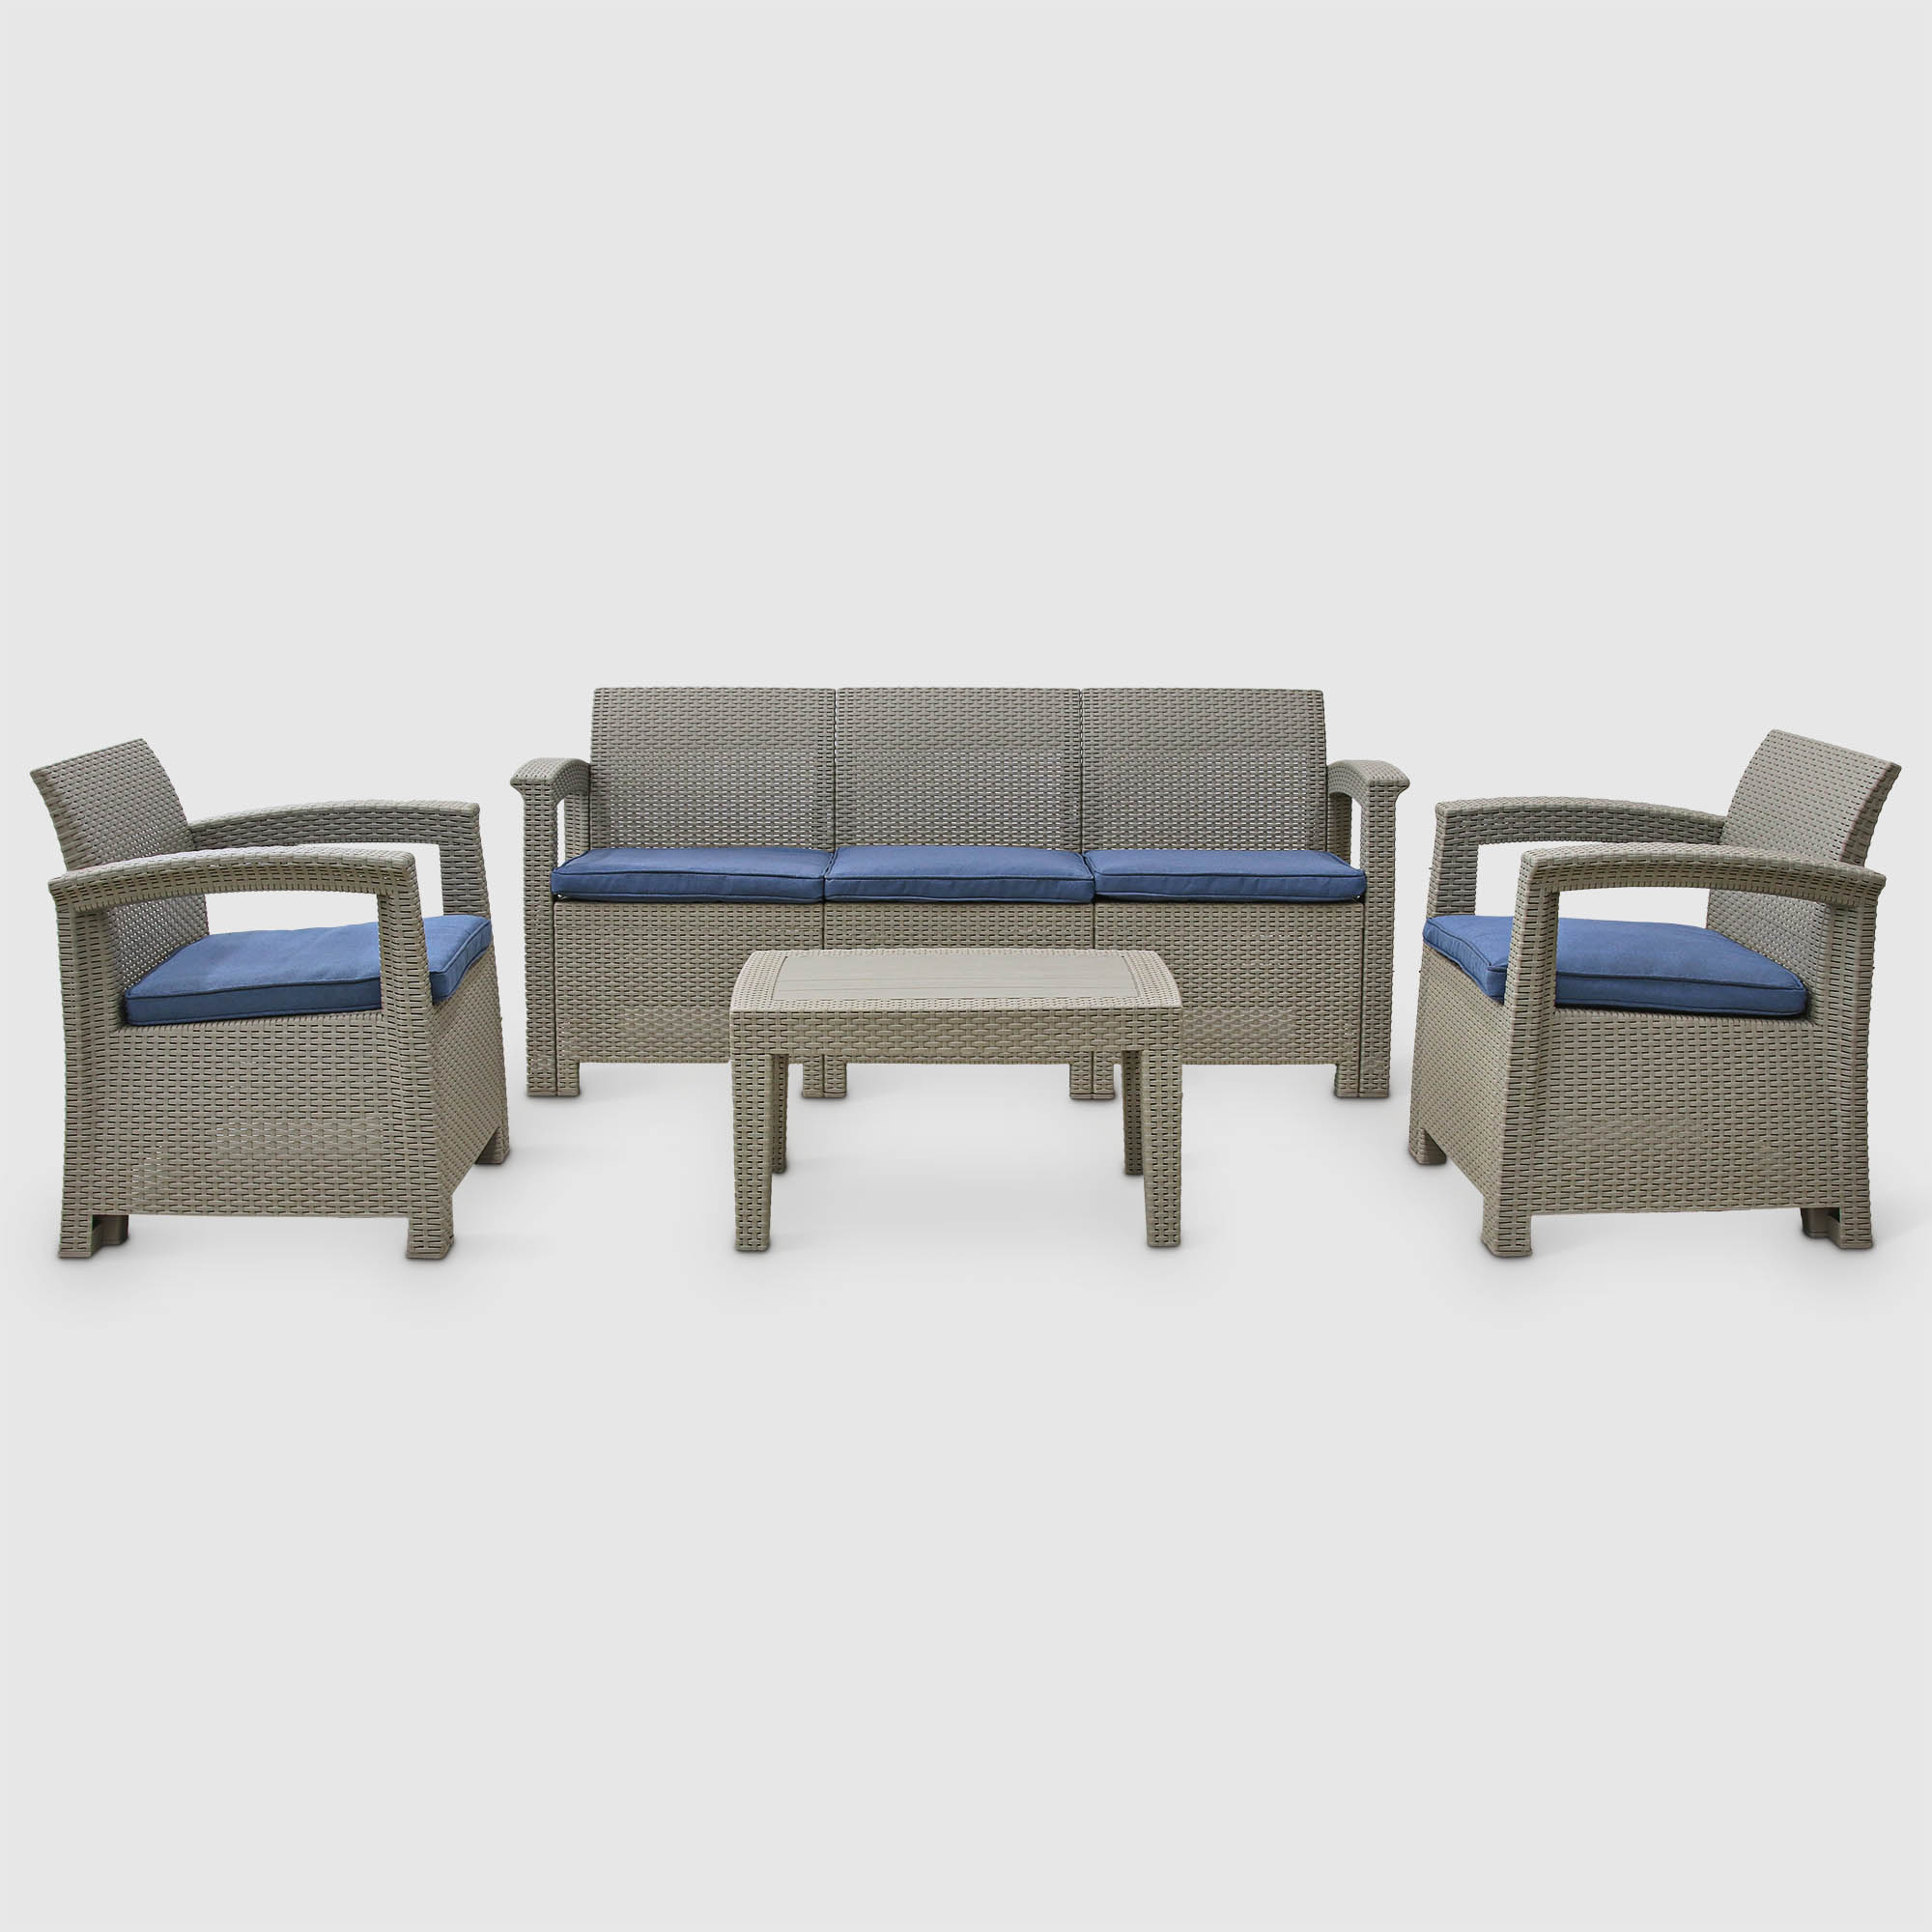 Комплект садовой мебели LF бежевый с синим из 4 предметов комплект садовой мебели degamo varenna бежевый из 3 предметов